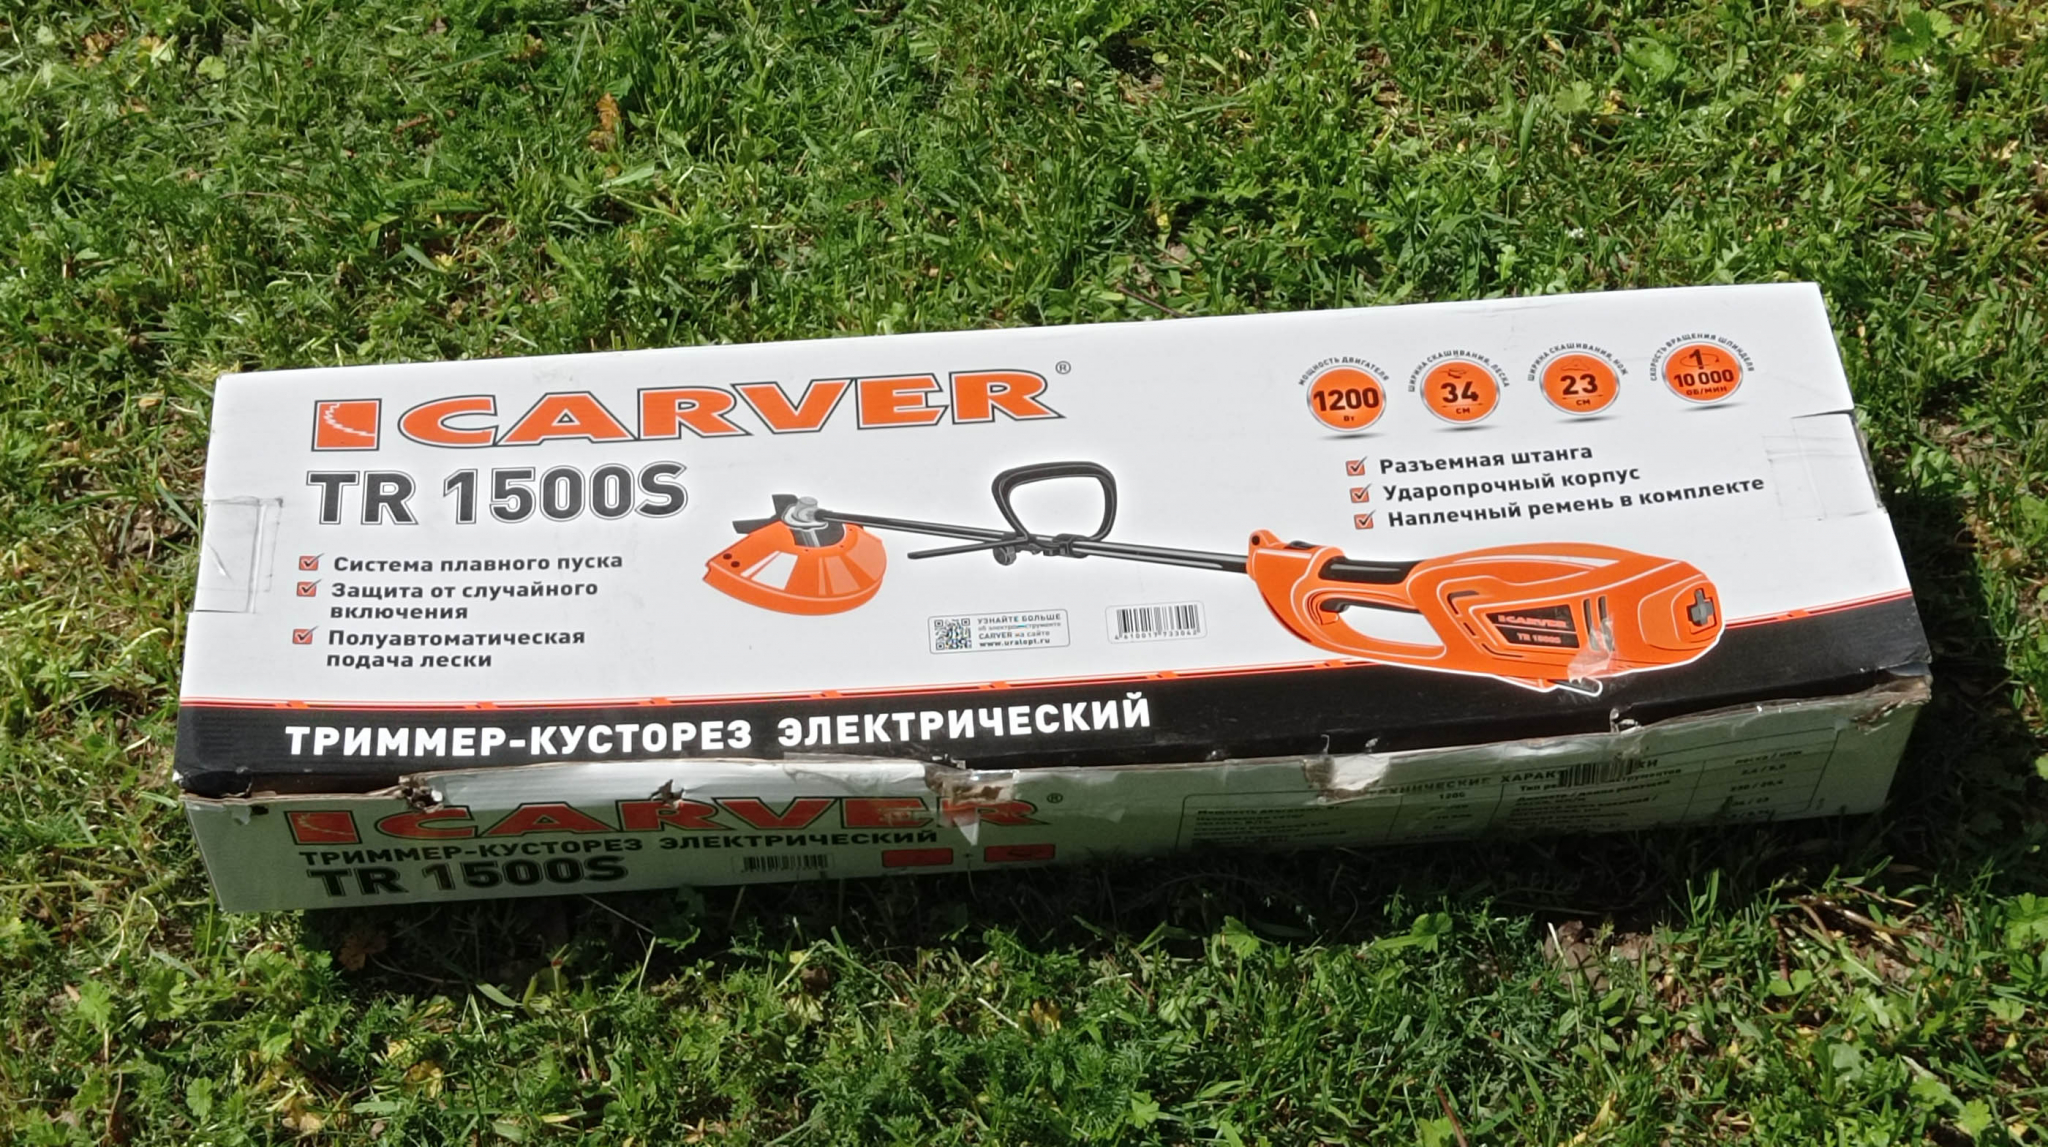 Триммер для травы Carver обзор бензокос и электрокос Инструкция по эксплуатации | Сайт производителя Carver